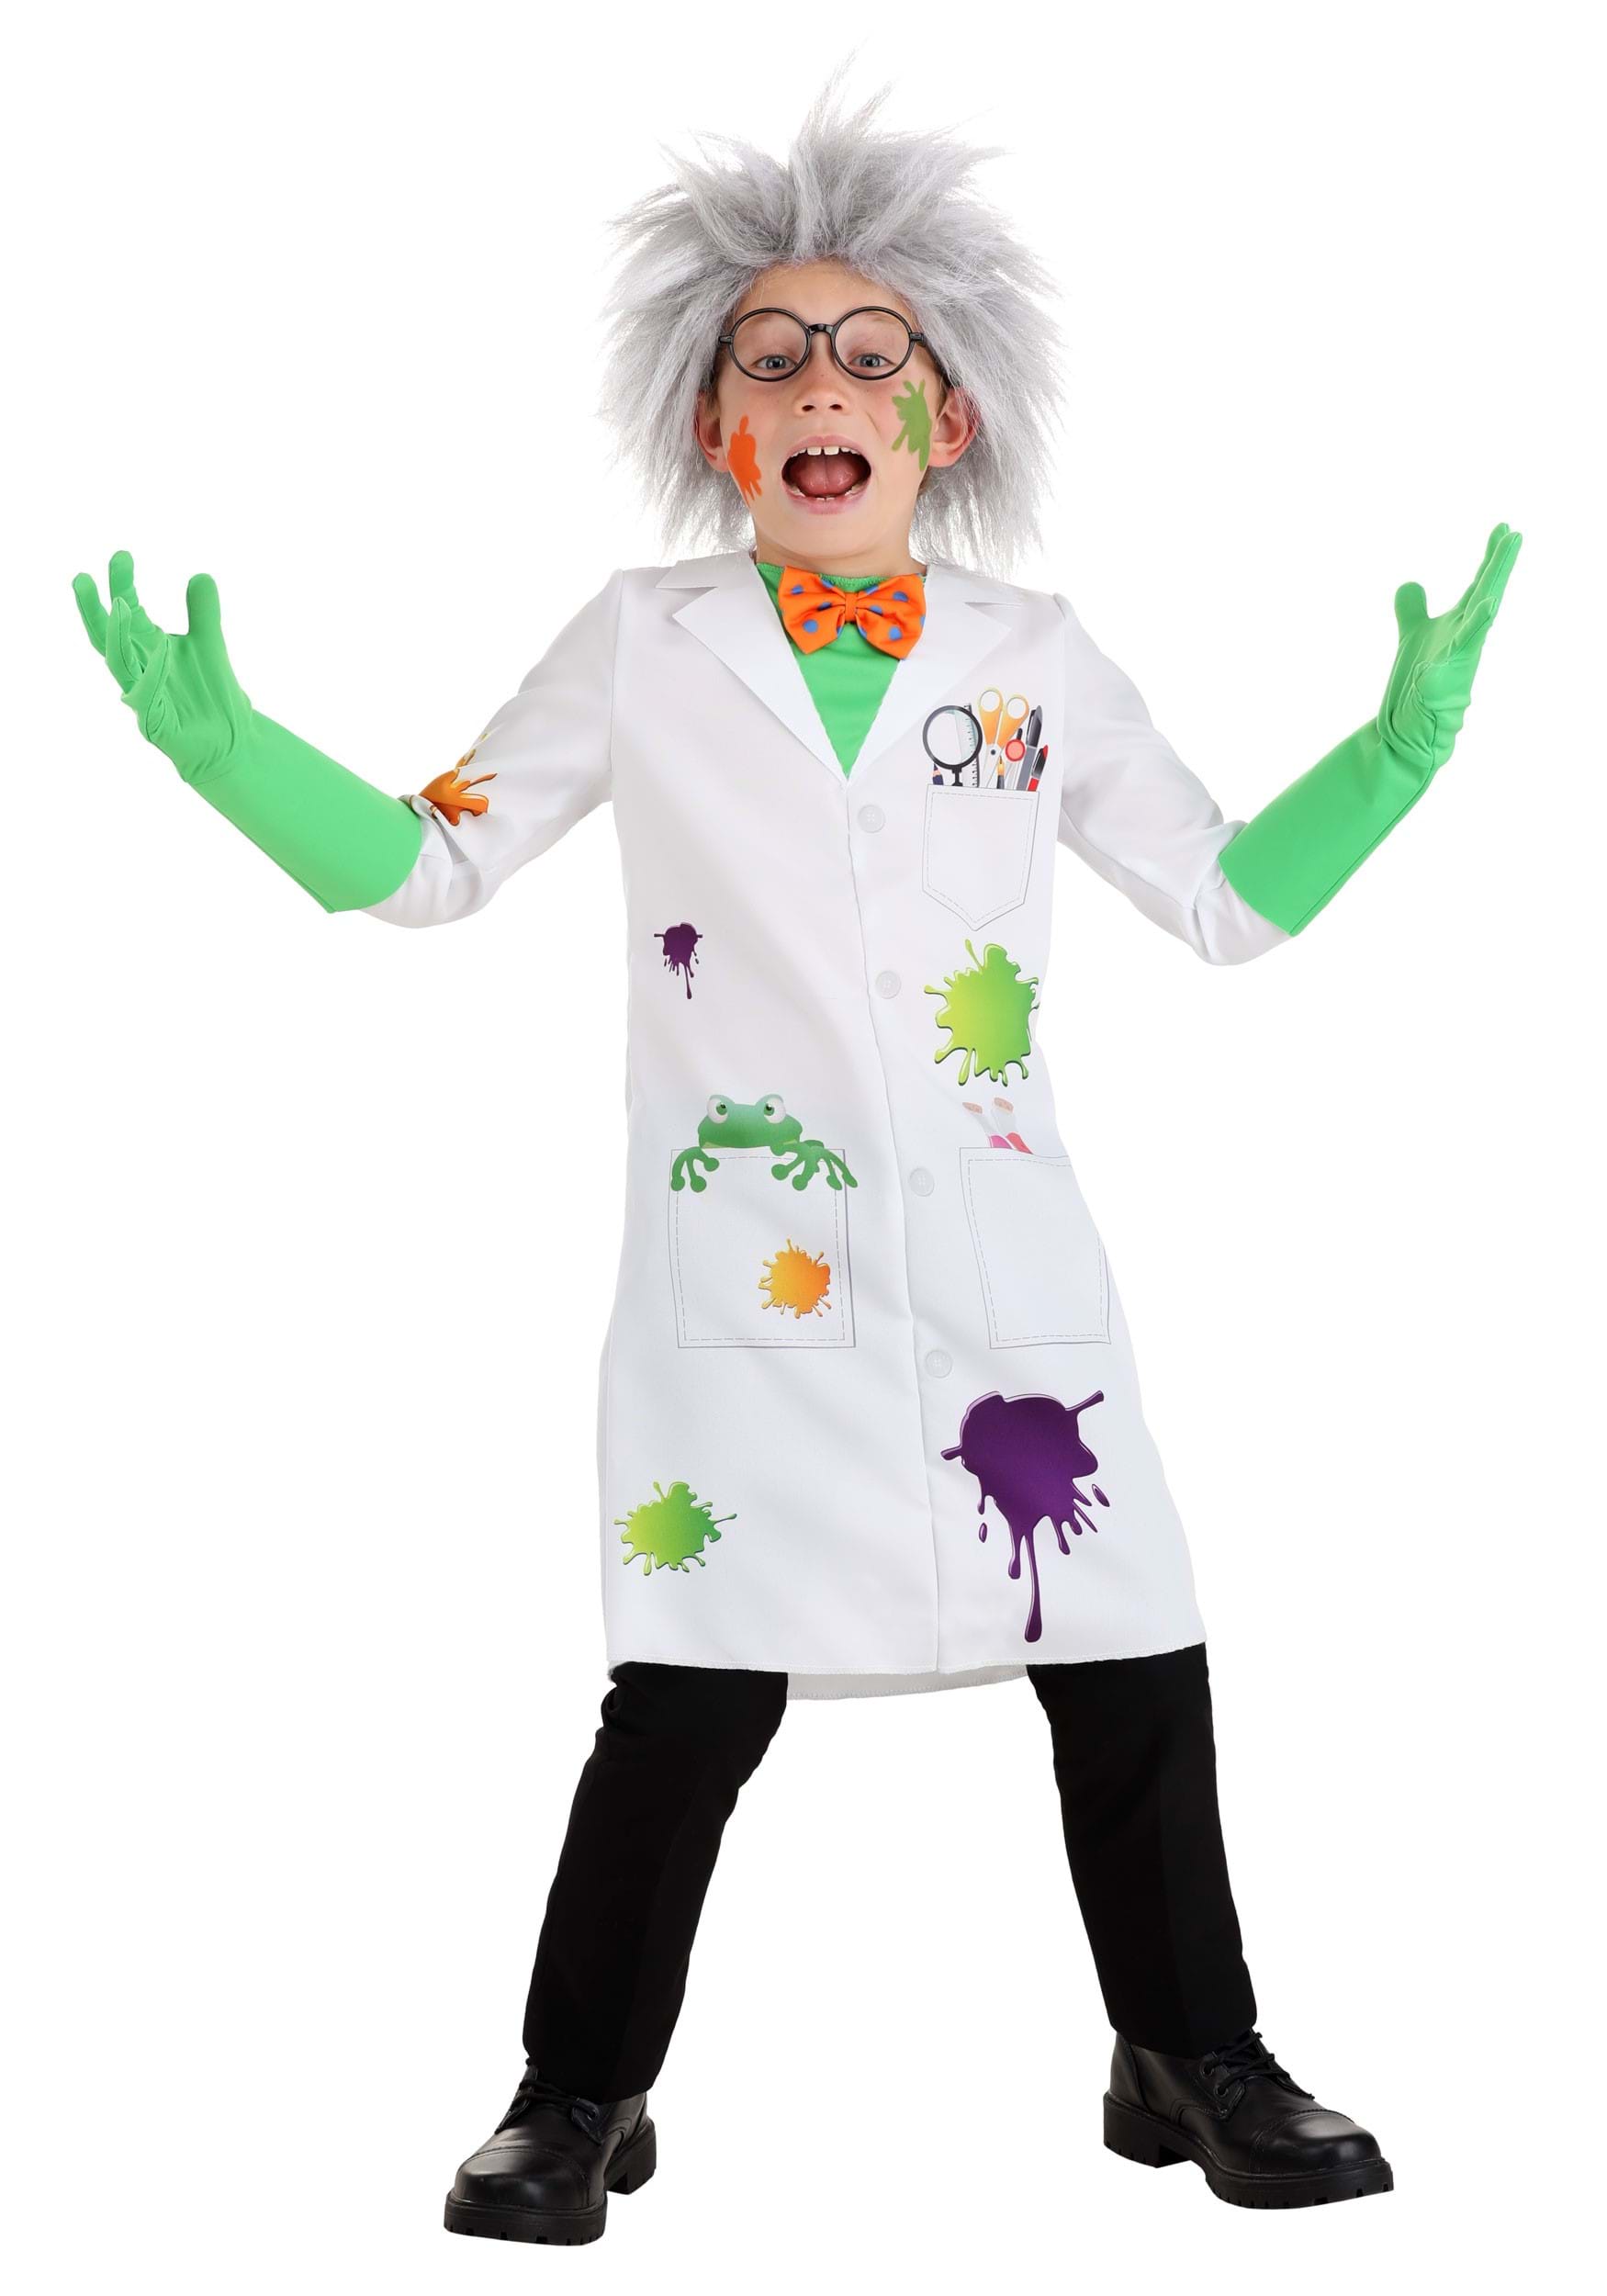 Mad Scientist Costume